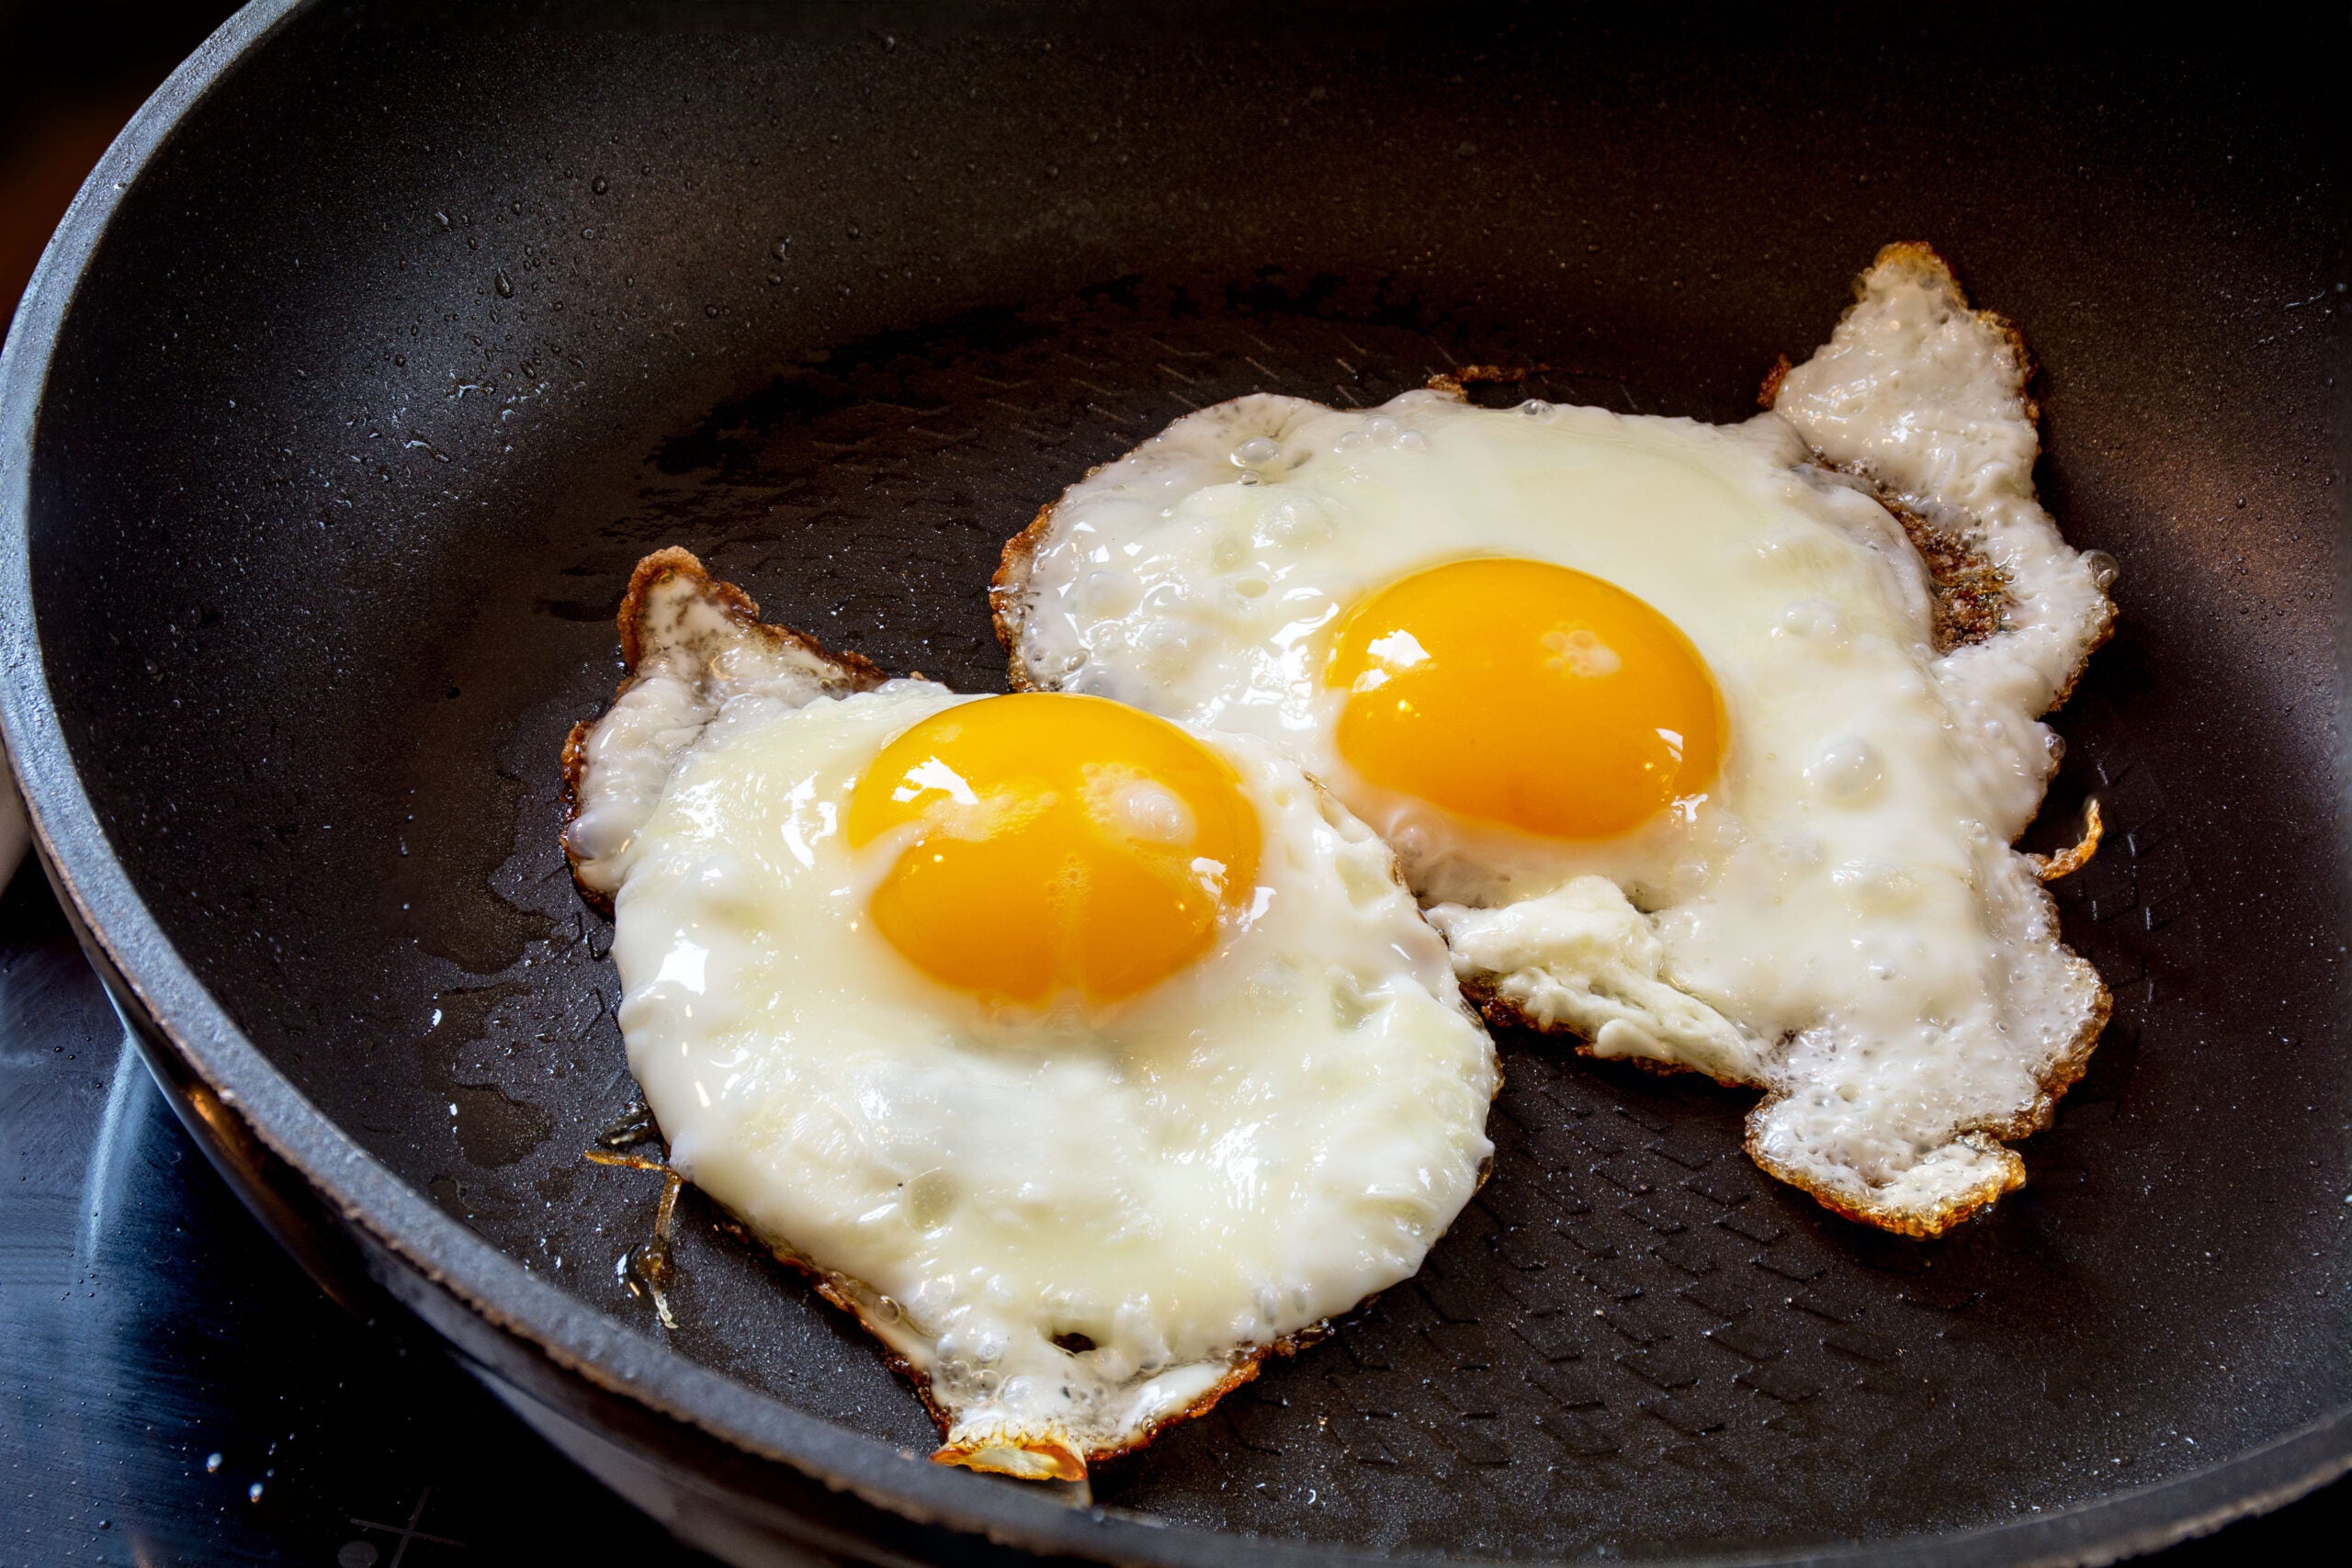 https://www.saveur.com/uploads/2022/06/30/00-LEAD-best-pans-for-eggs-saveur-scaled.jpg?auto=webp